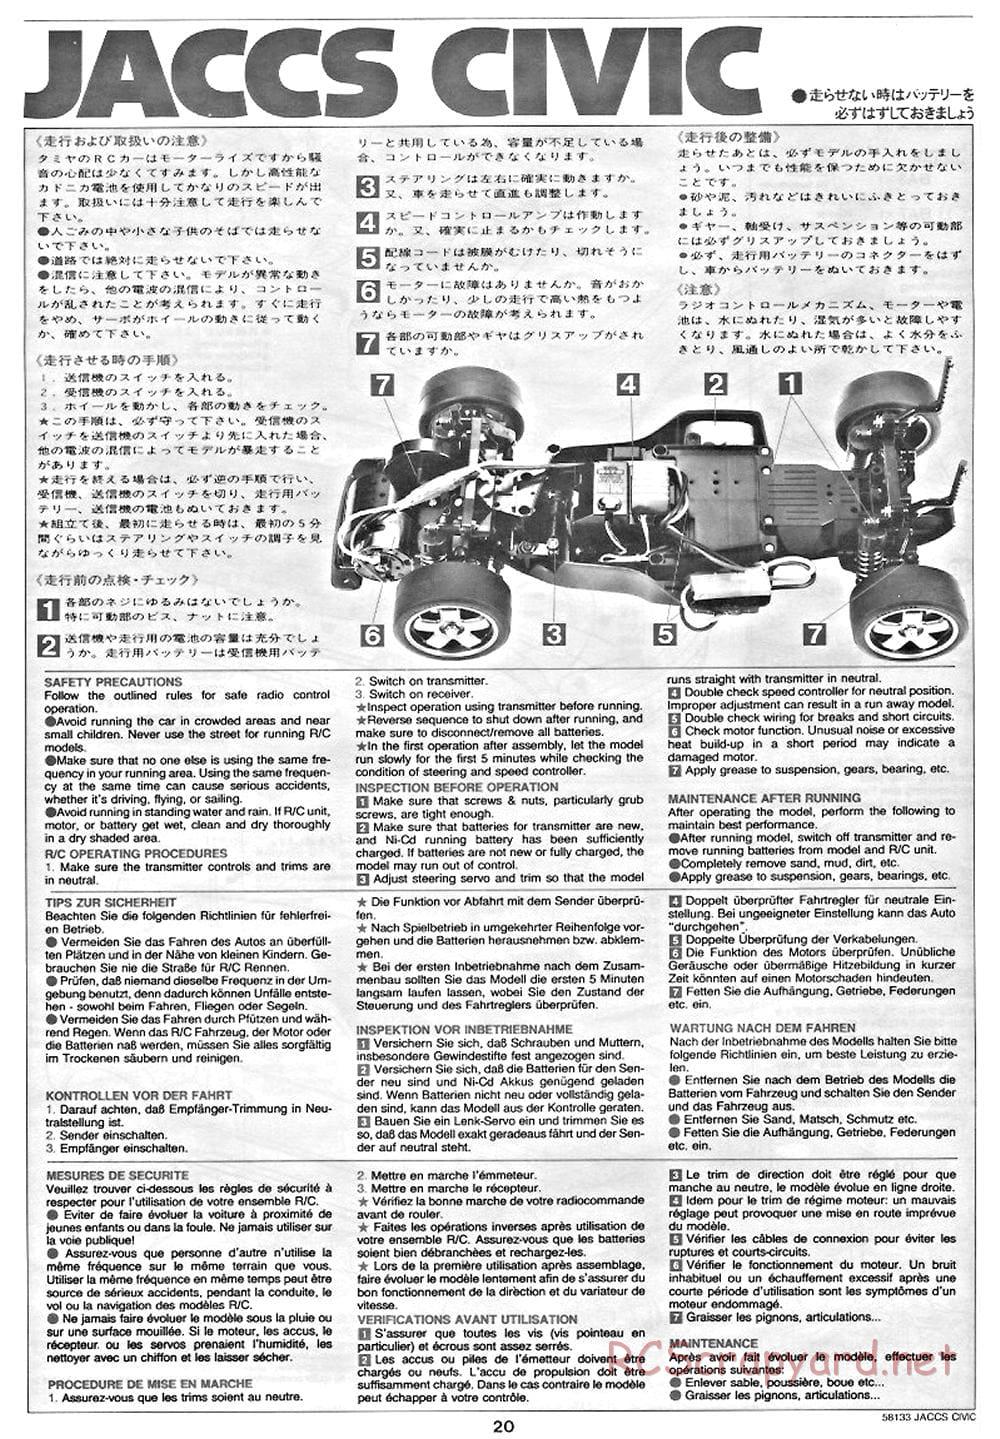 Tamiya - JACCS Honda Civic - FF-01 Chassis - Manual - Page 20